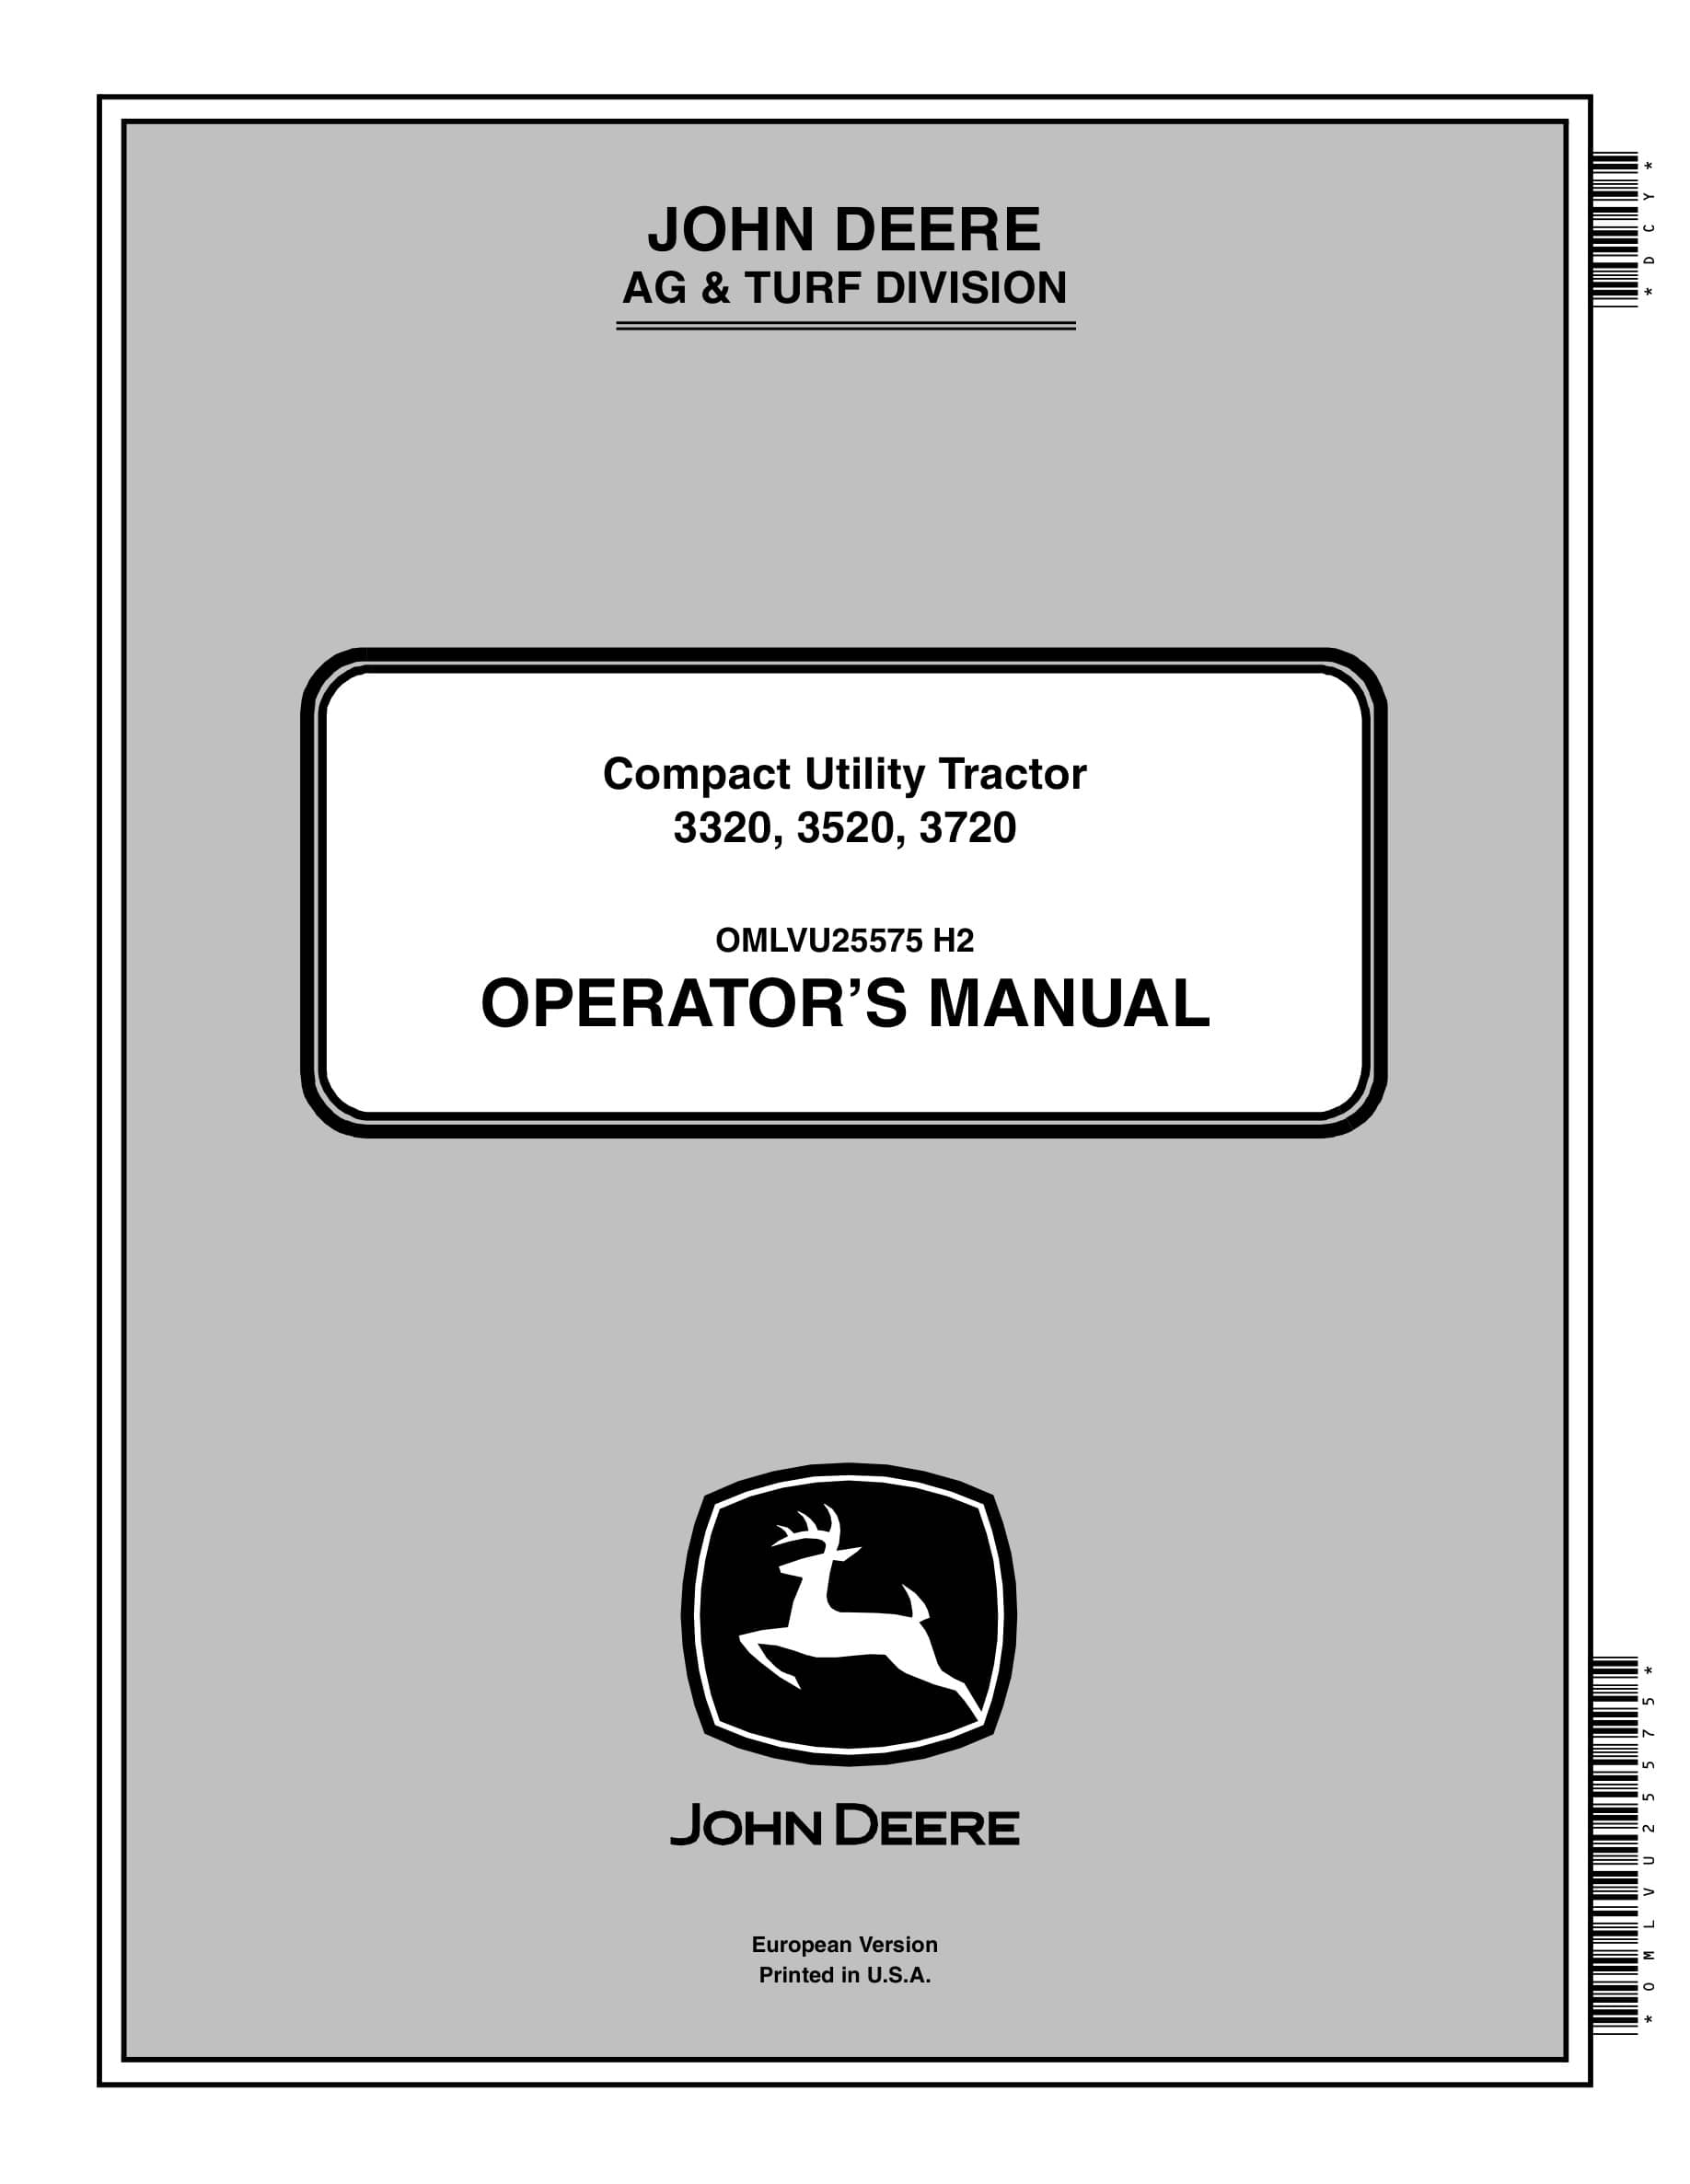 John Deere 3320, 3520, 3720 Compact Utility Tractors Operator Manuals OMLVU25575-1